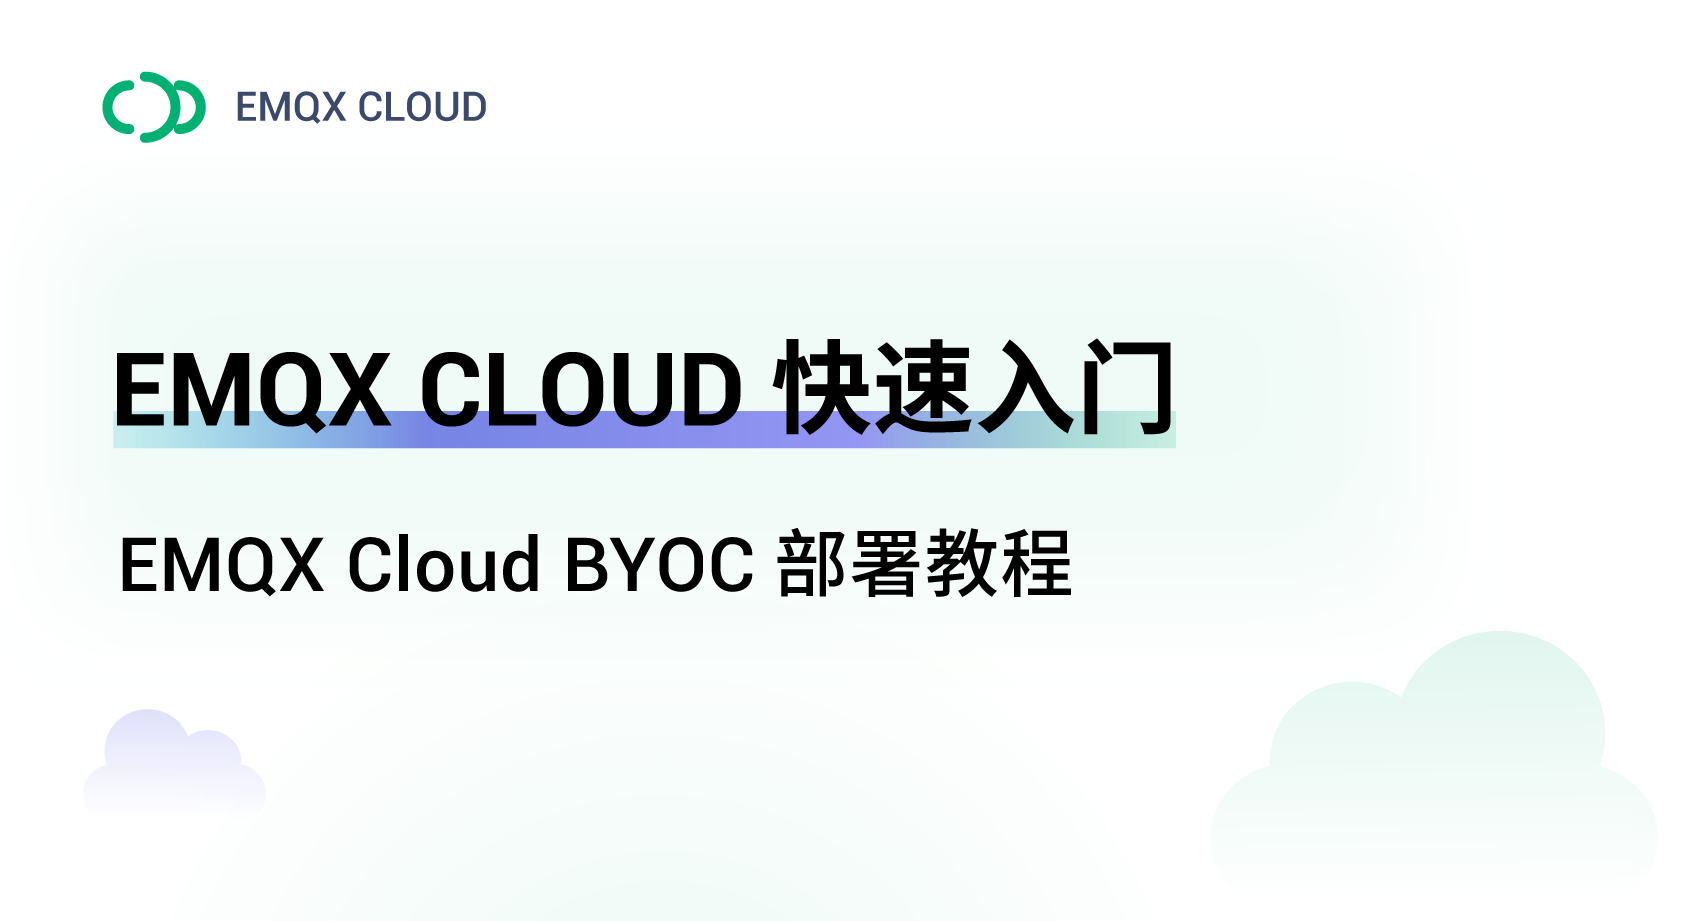 在阿里云上部署 EMQX Cloud BYOC